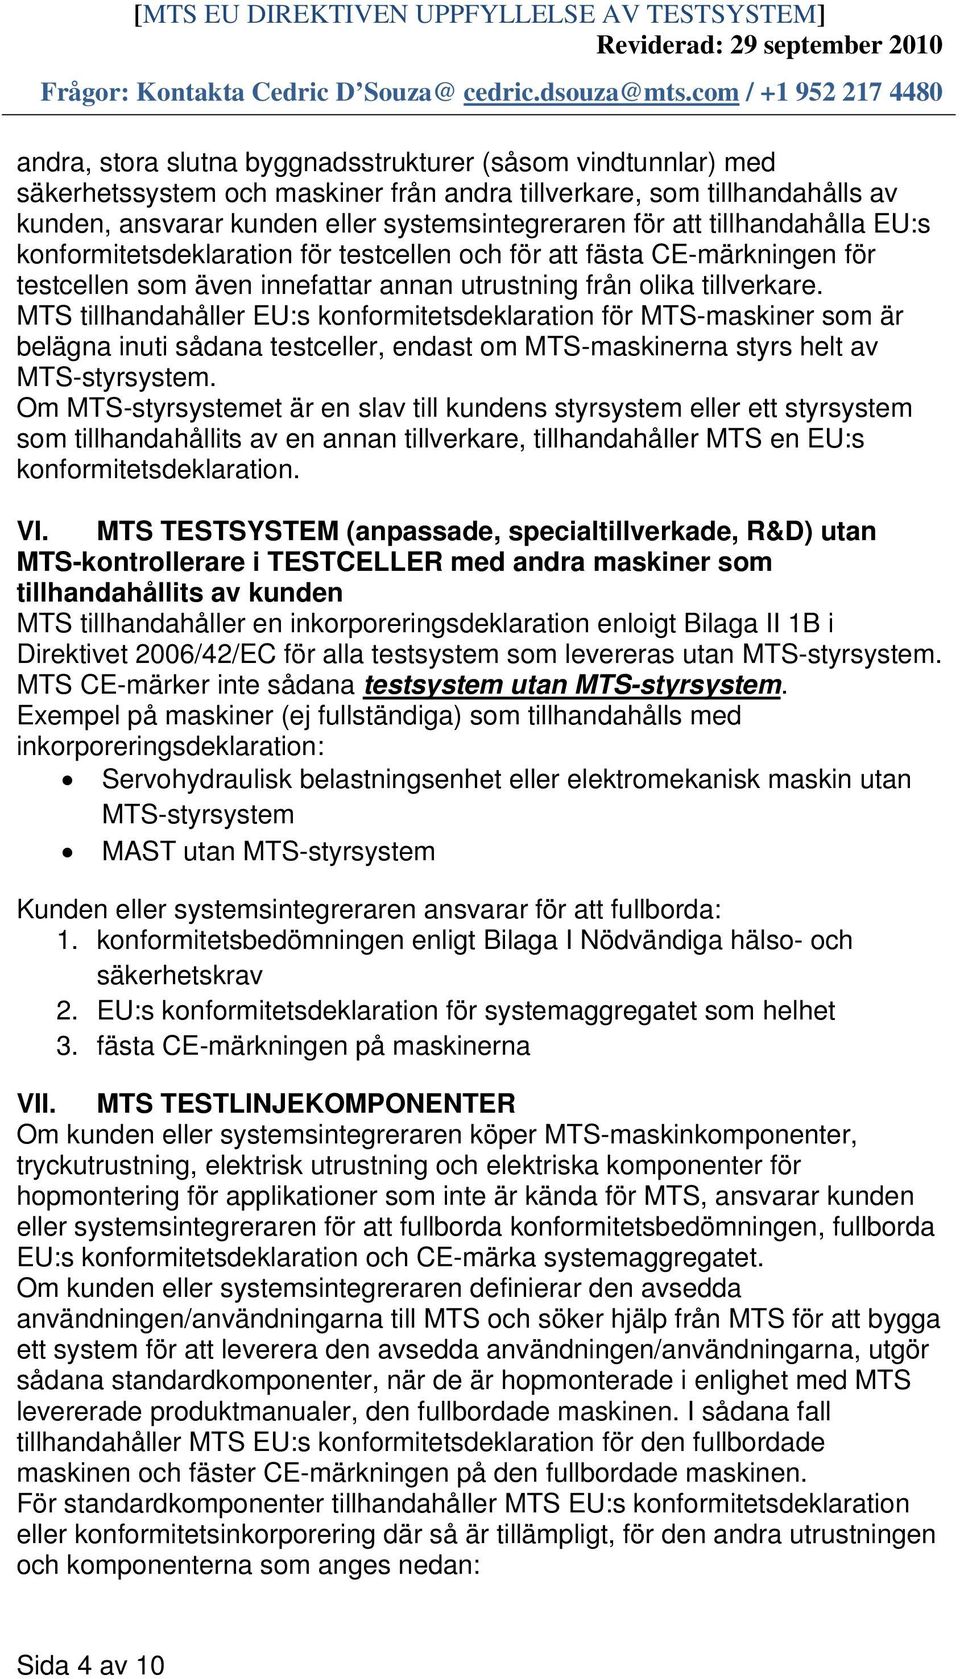 MTS tillhandahåller EU:s konformitetsdeklaration för MTS-maskiner som är belägna inuti sådana testceller, endast om MTS-maskinerna styrs helt av MTS-styrsystem.